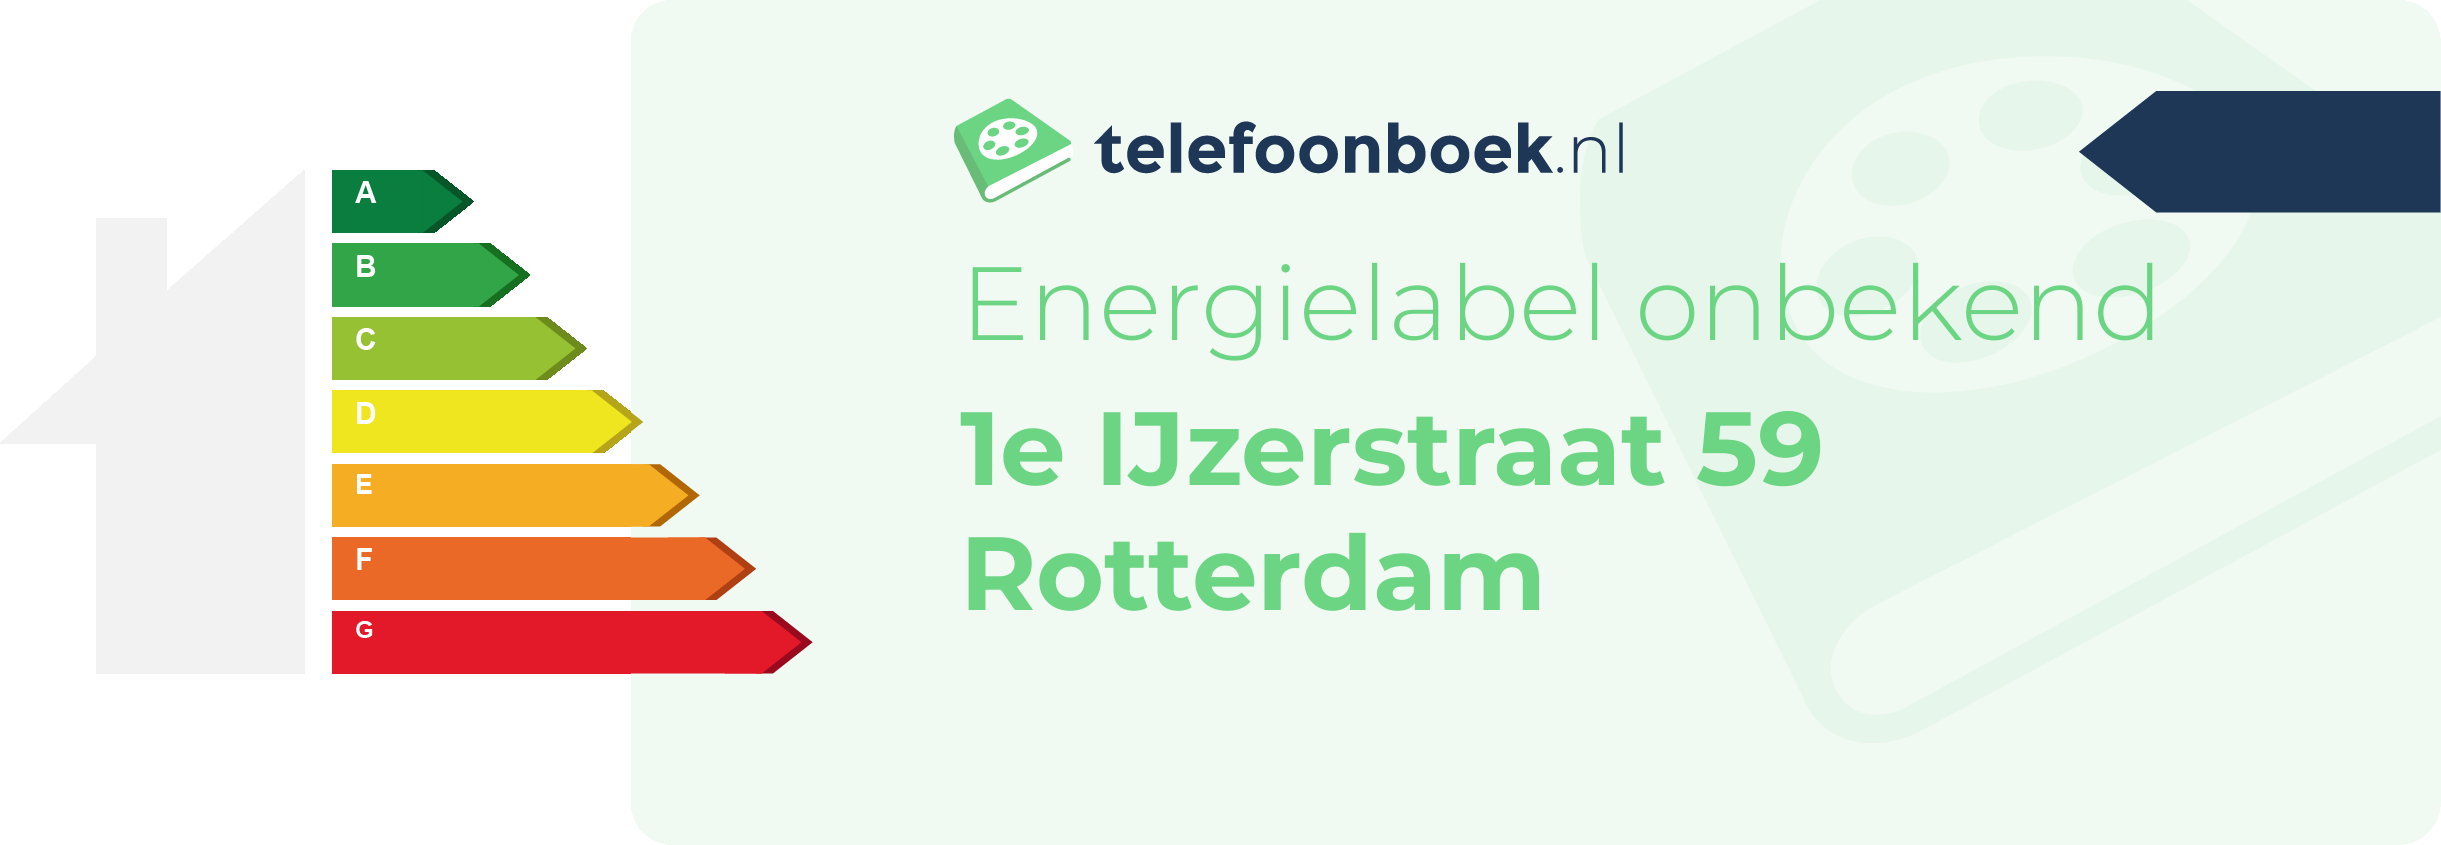 Energielabel 1e IJzerstraat 59 Rotterdam